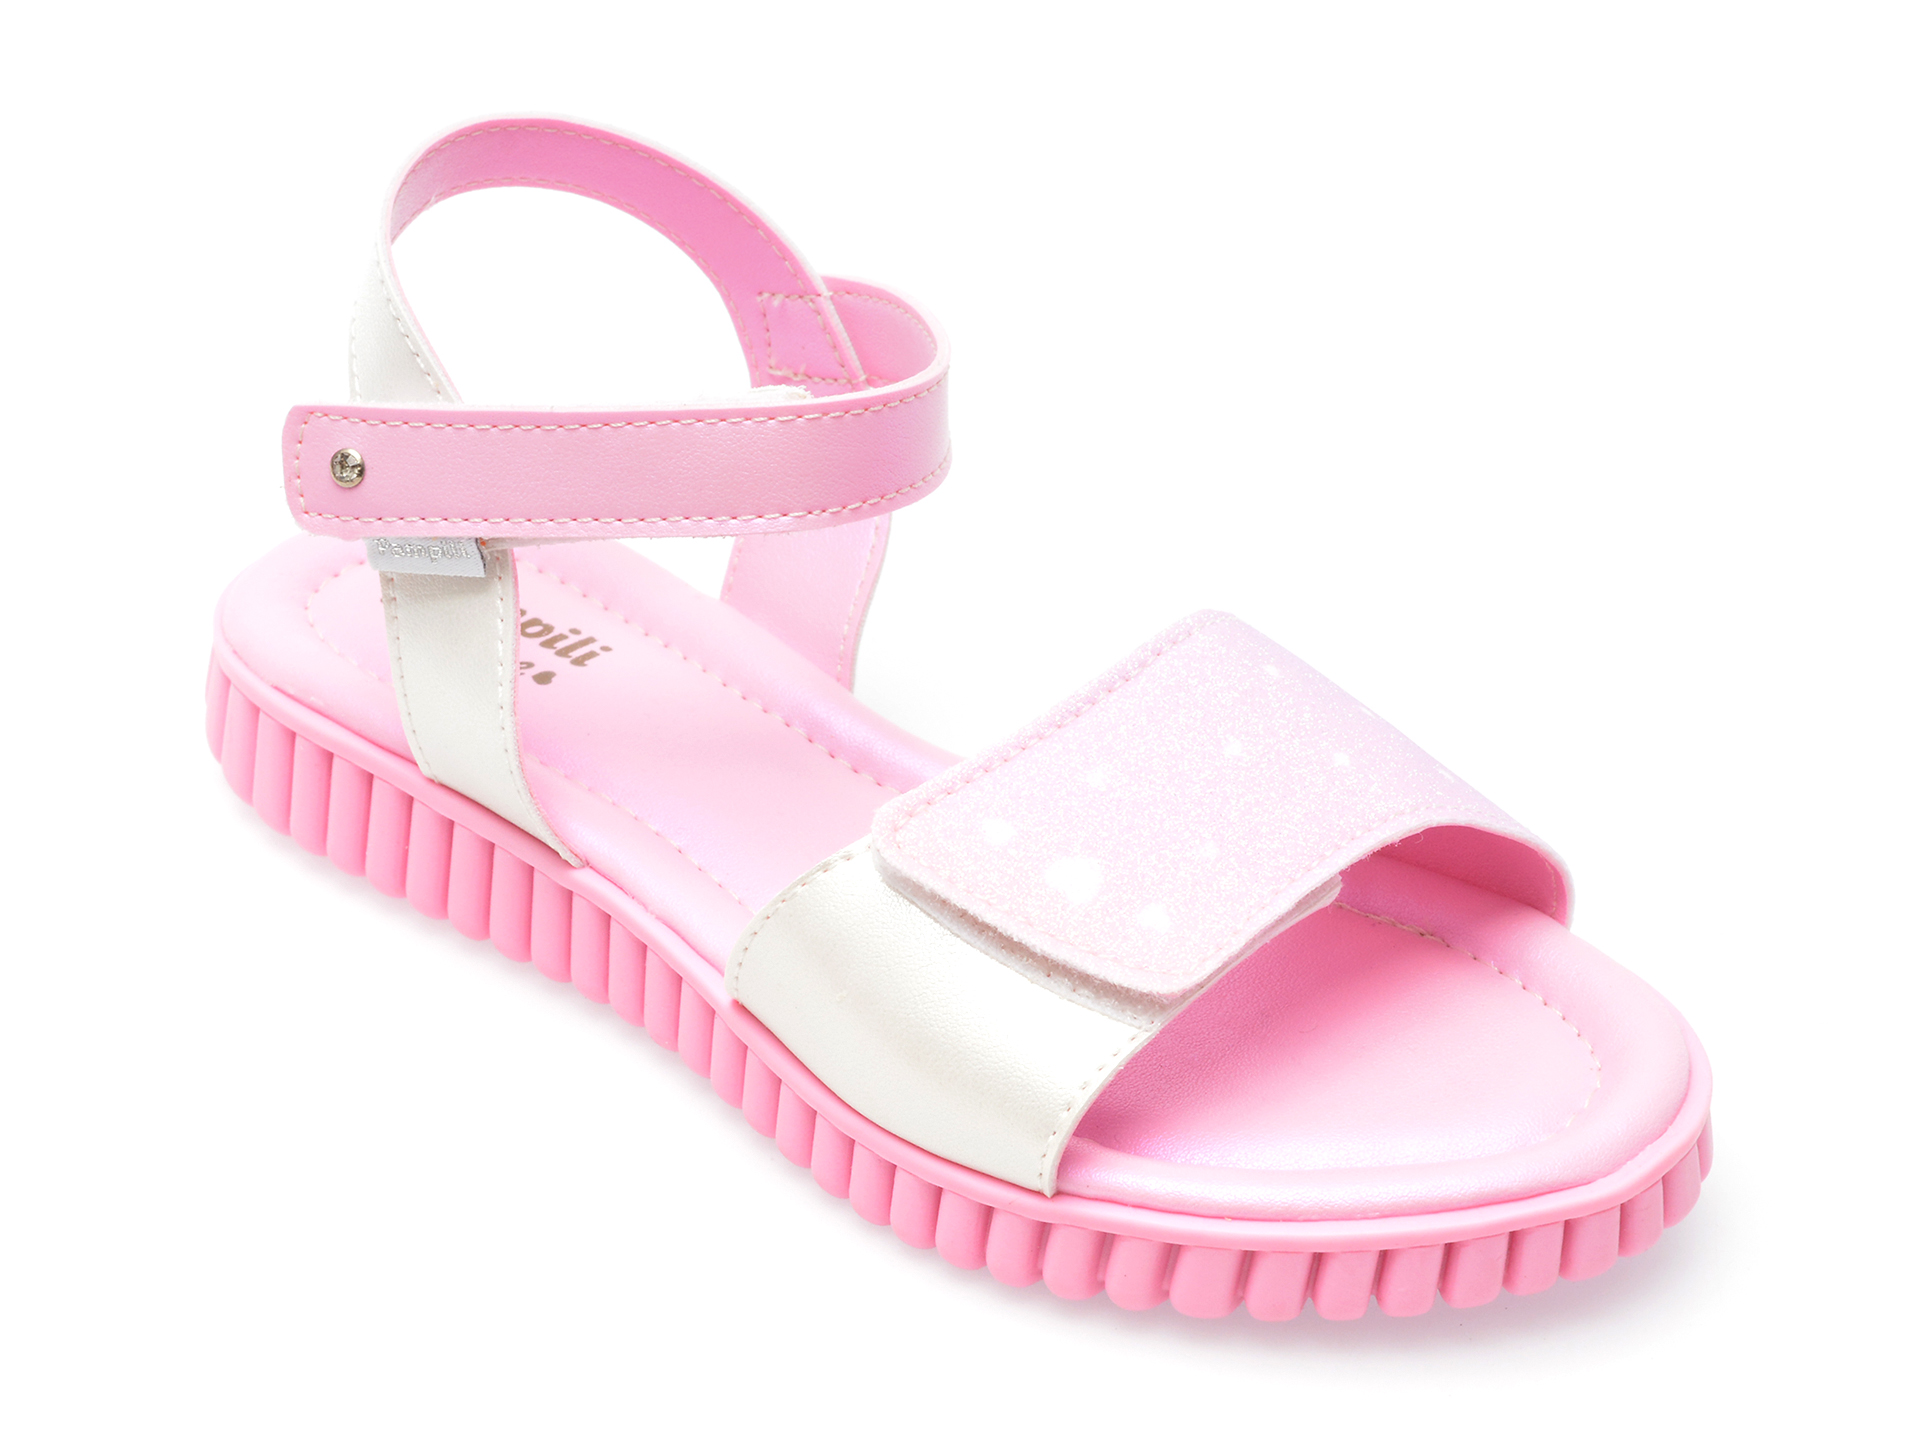 Sandale PAMPILI roz, 123188, din piele ecologica /copii/incaltaminte